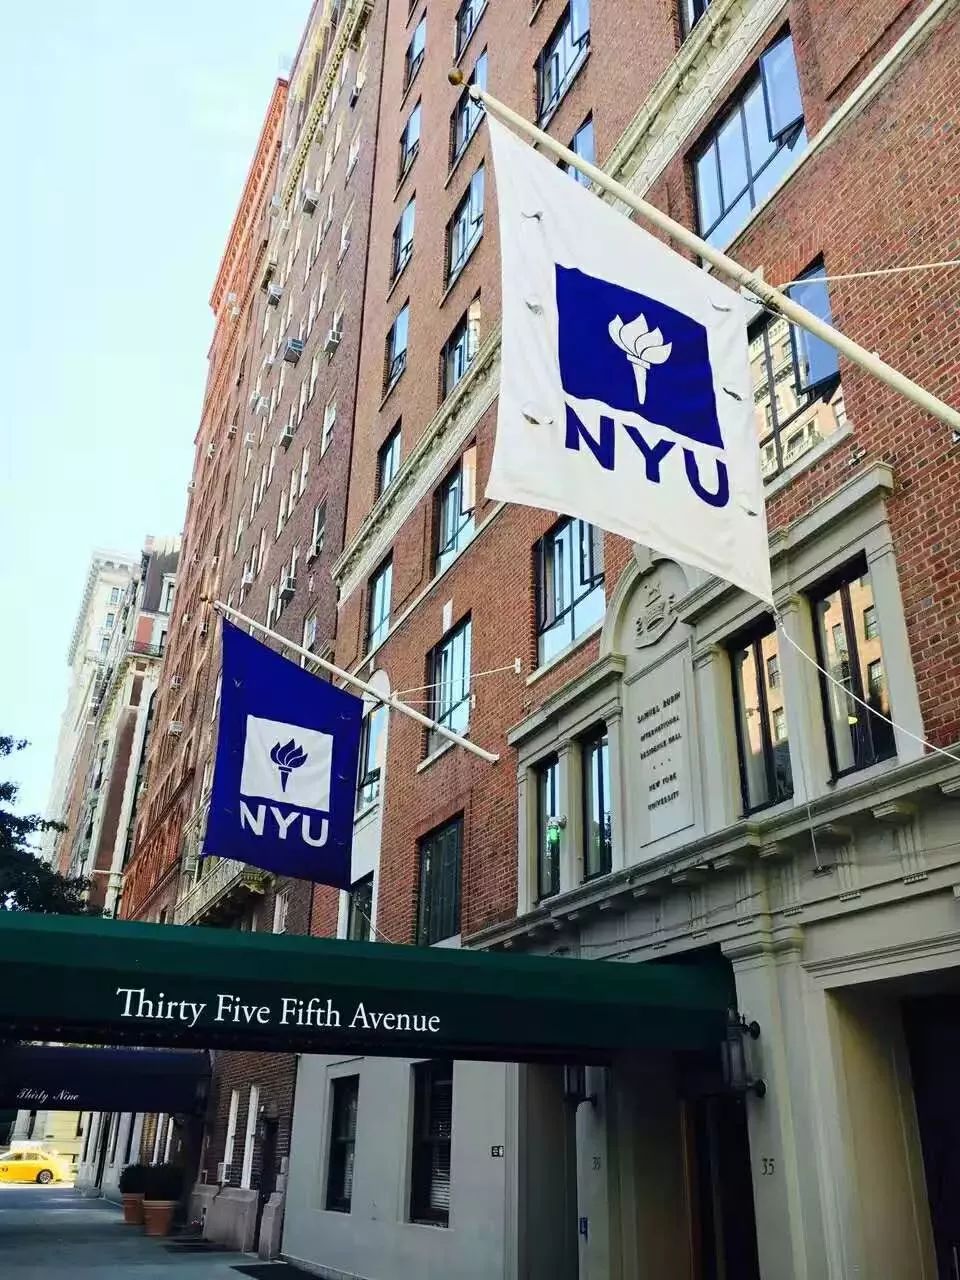 说起纽约大学nyu,许多人可能第一印象就是浪,不错,在纽约灯红酒绿的